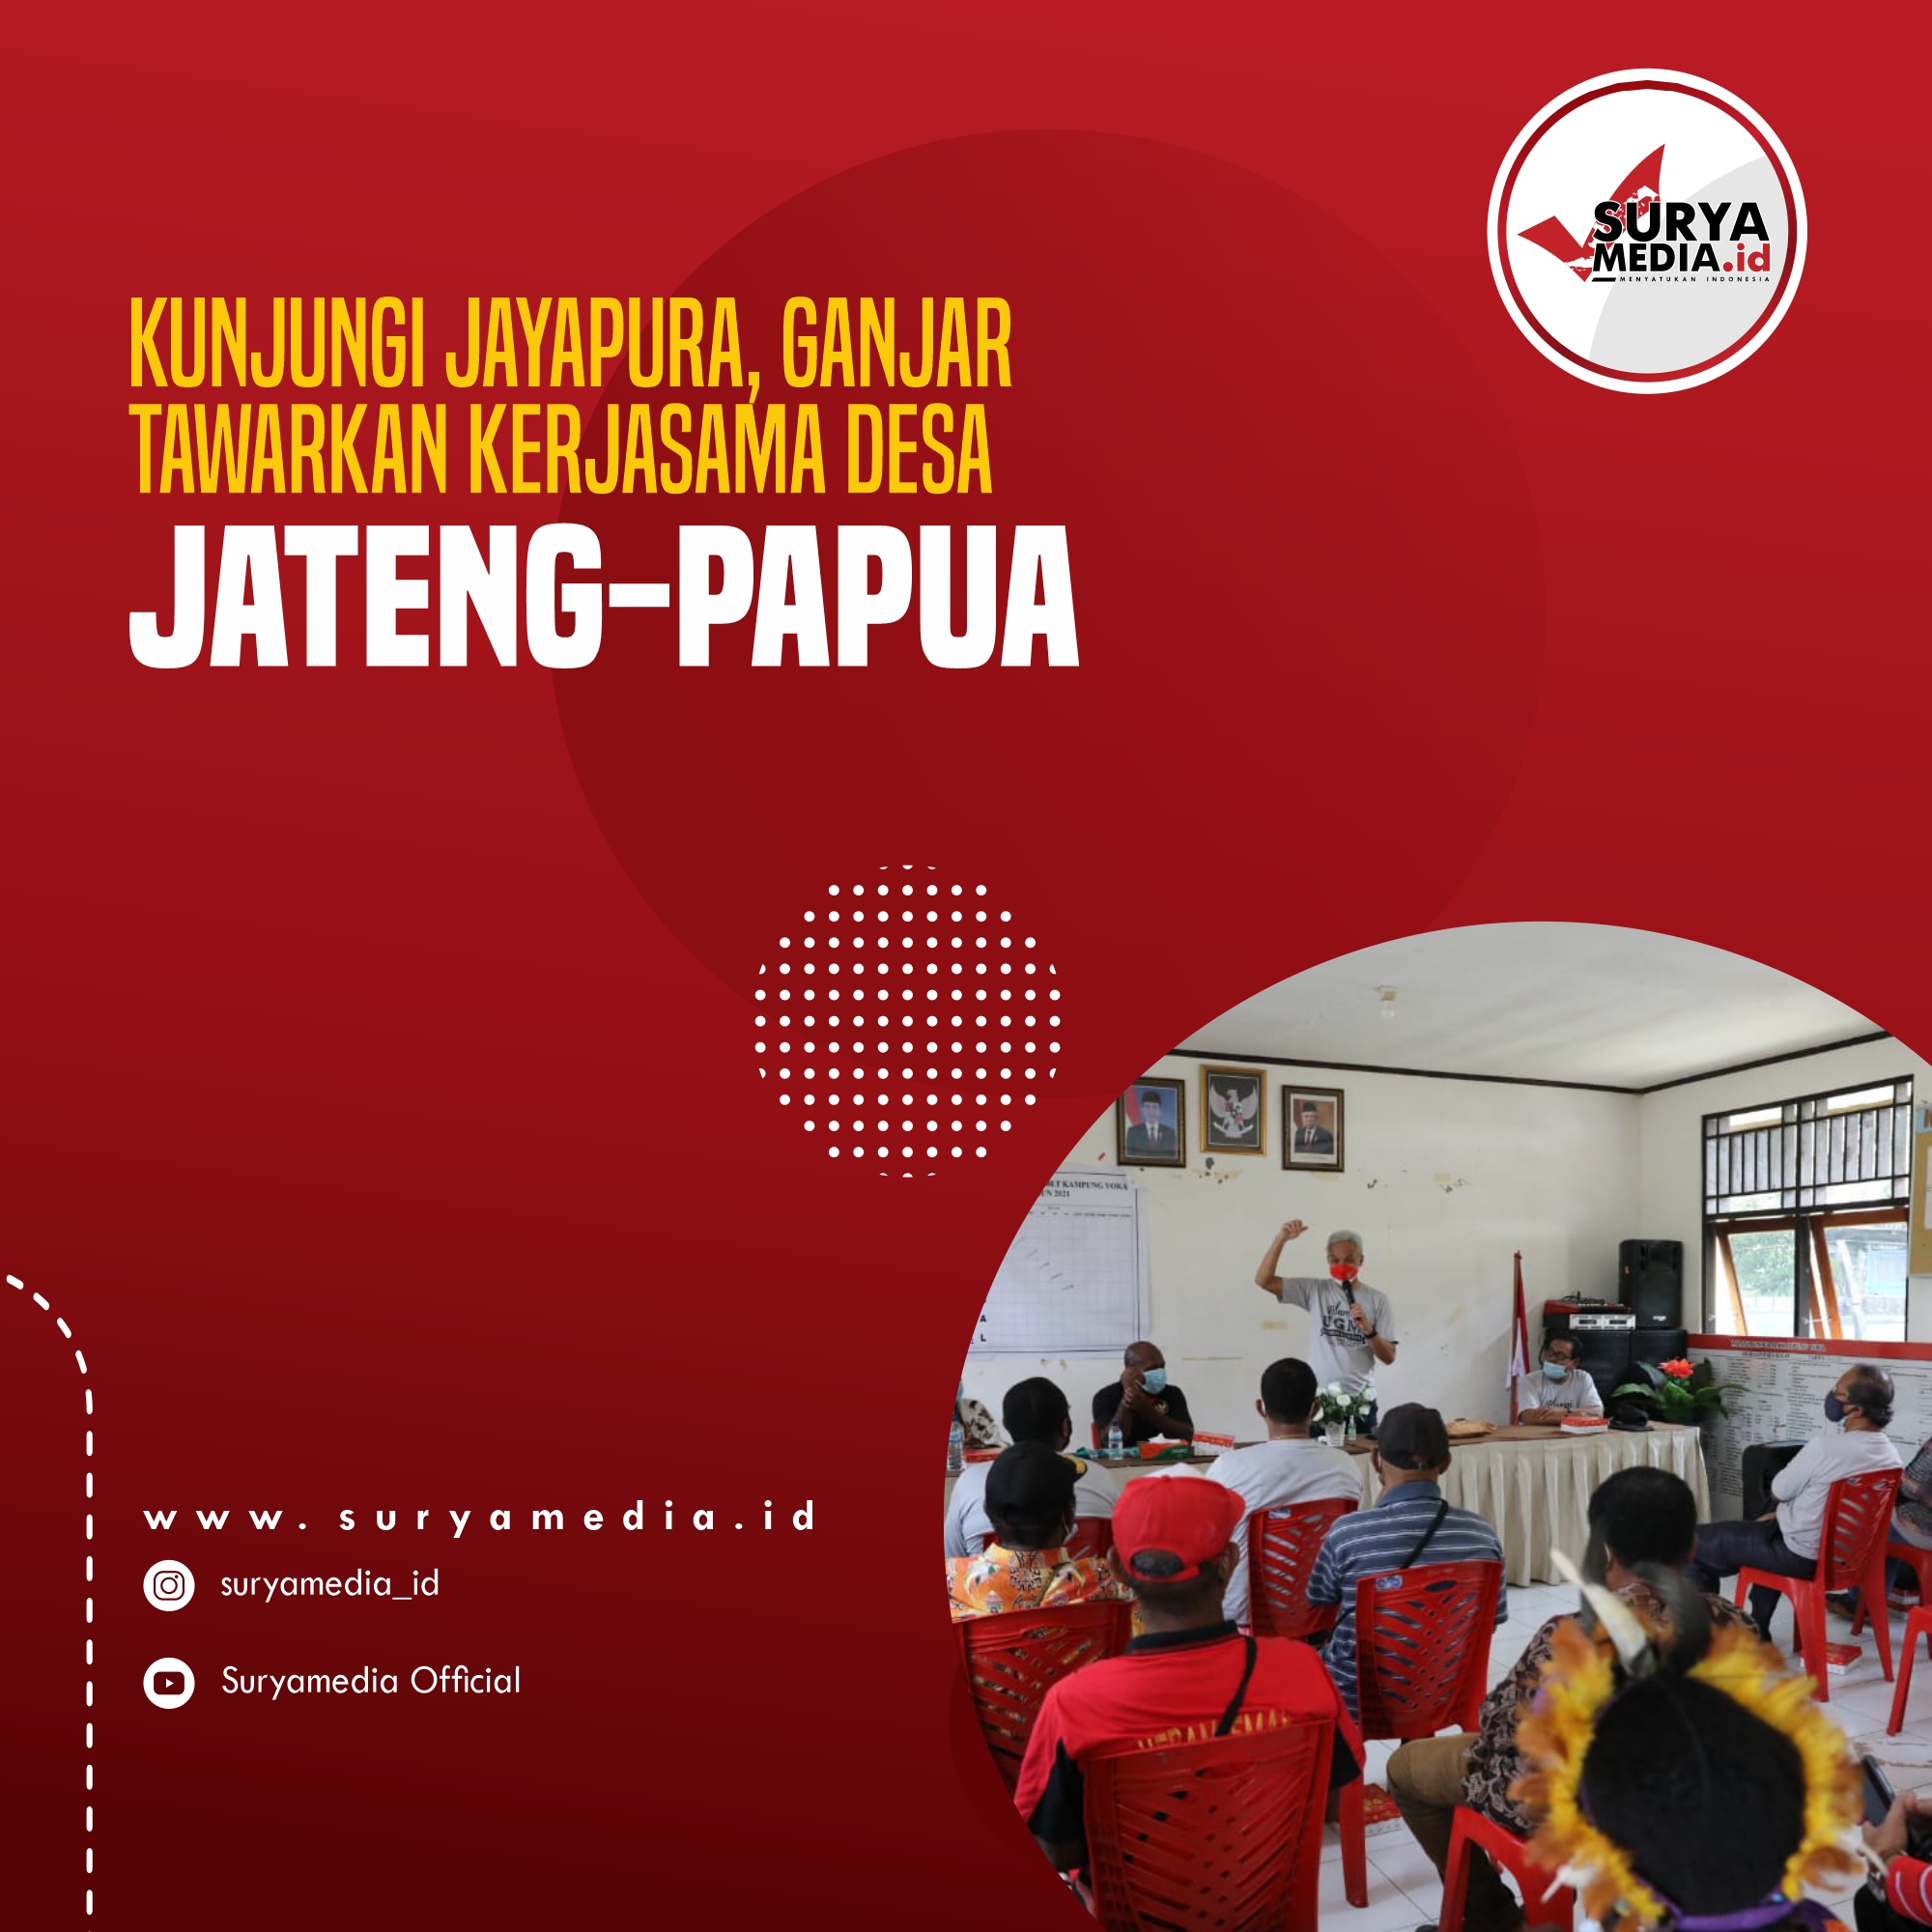 Kunjungi jayapura, ganjar tawarkan kerjasama desa jateng-papua